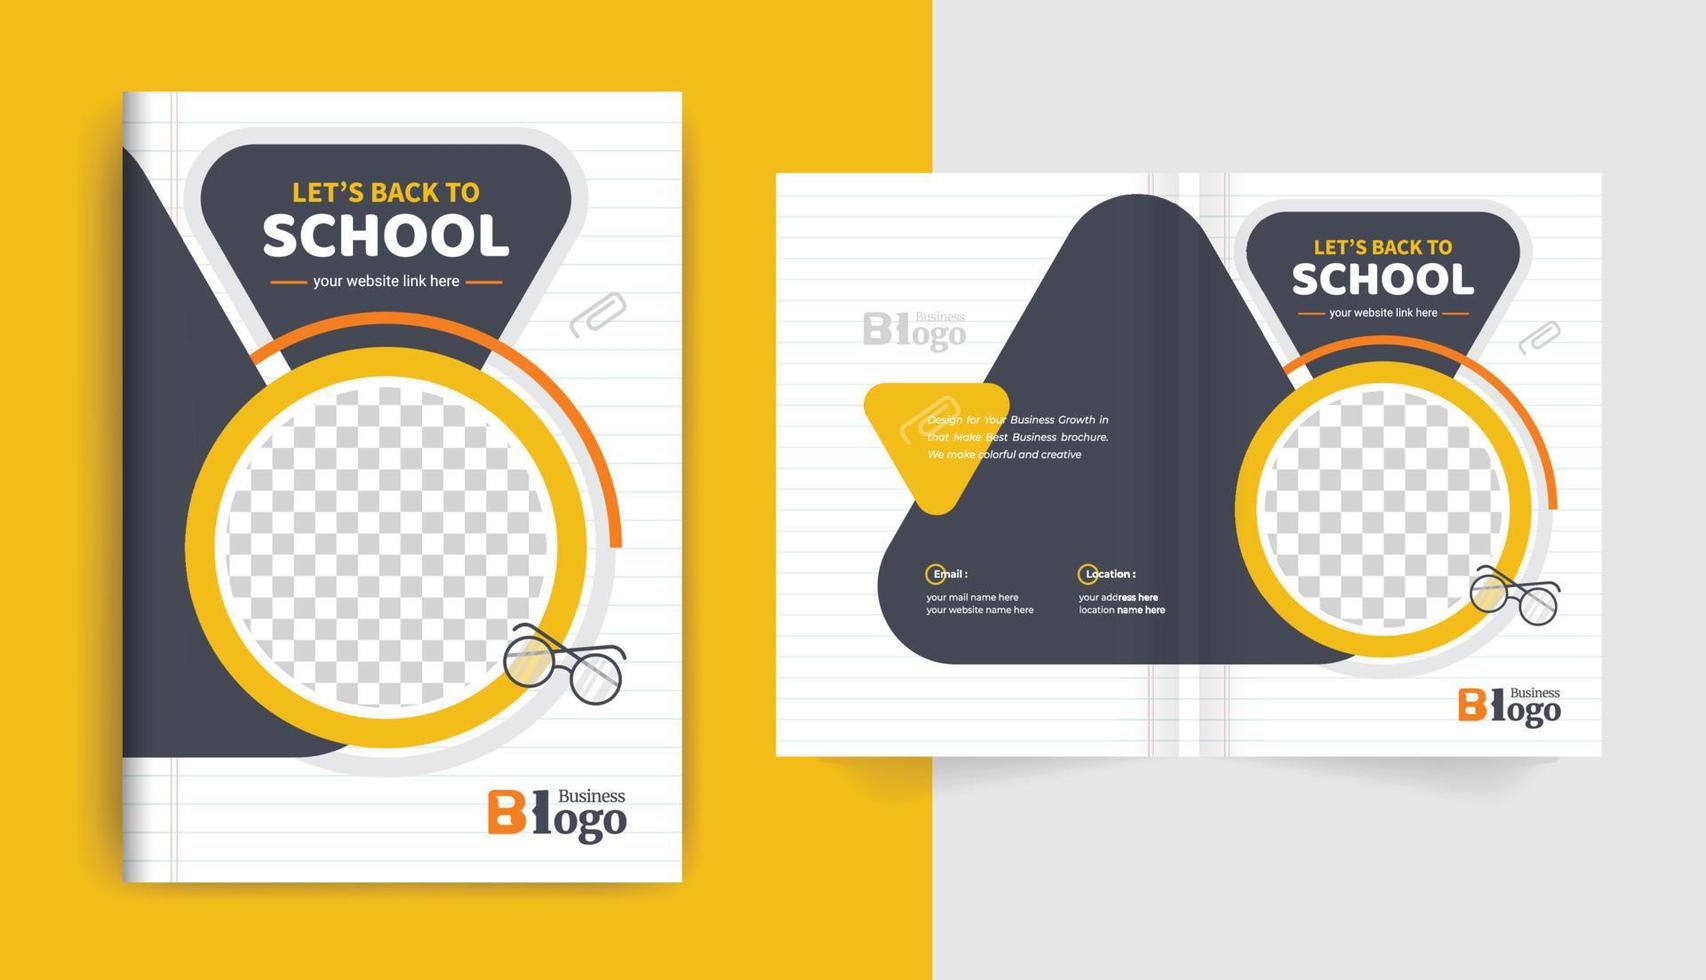 färgglad modern tillbaka till skolan utbildning antagning broschyr omslag layout design för företagsverksamhet och företagsbruk tema vektor